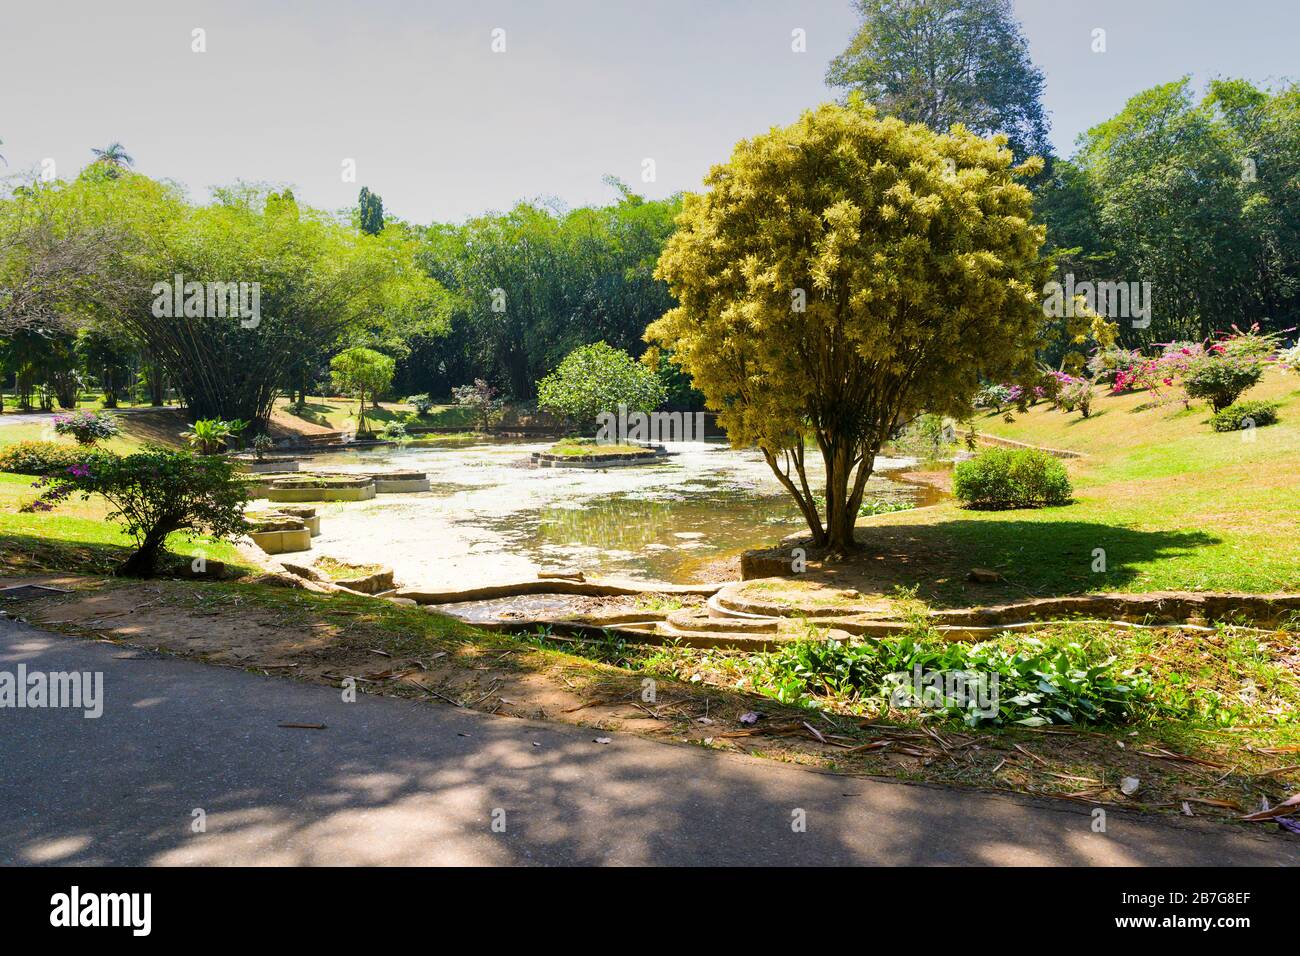 Asie du Sud Sri Lanka Royal Botanical Gardens Perradeniya a commencé 1371 étang forme de l'île de Sri Lanka collecte des plantes aquatiques arbres fleurs buissons Banque D'Images